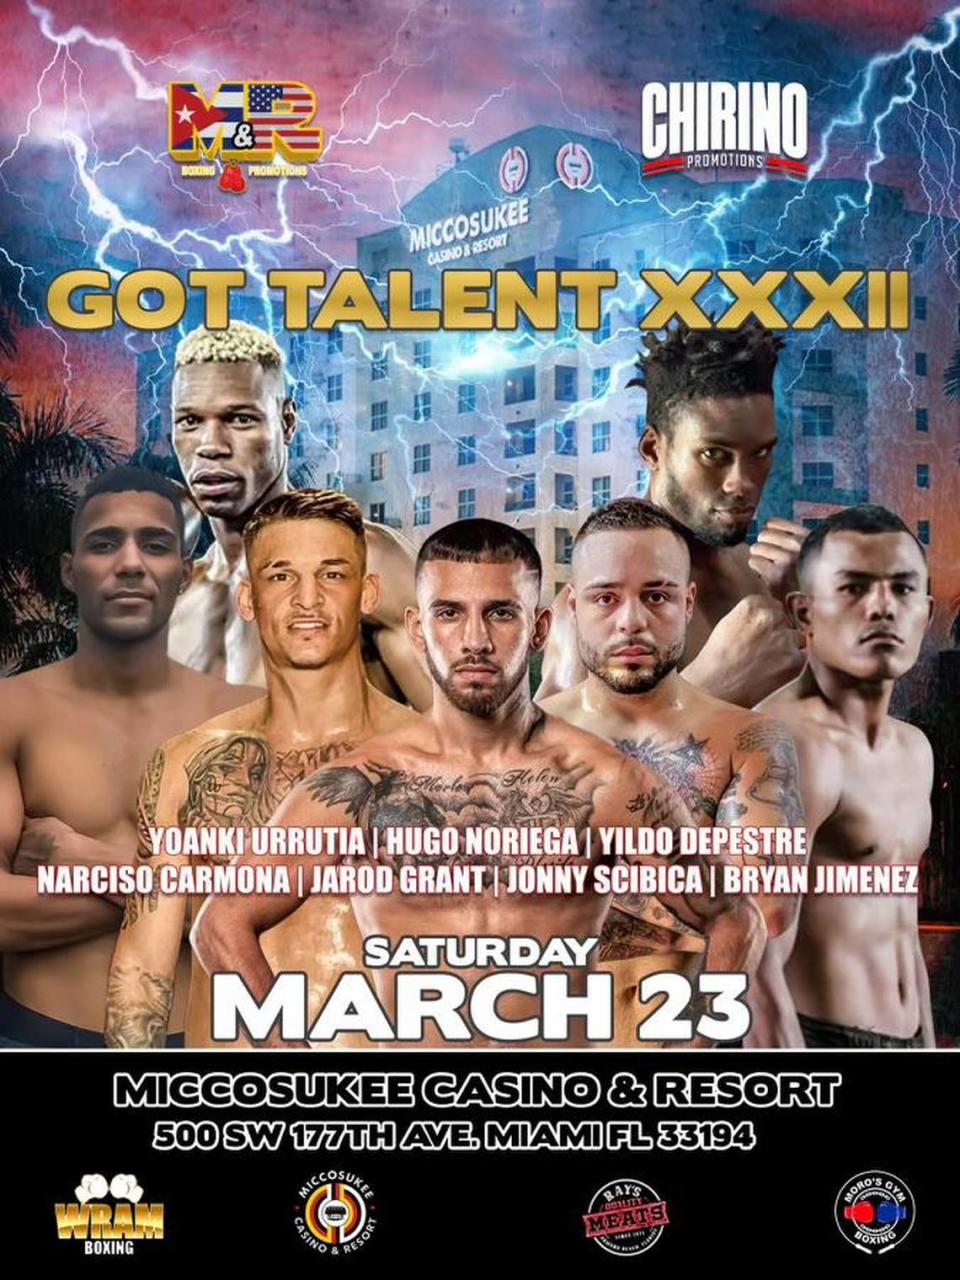 La cartelera de boxeo GOT TALENT se celebrará el sábado 23 de marzo en el Miccosukee Hotel y Casino.